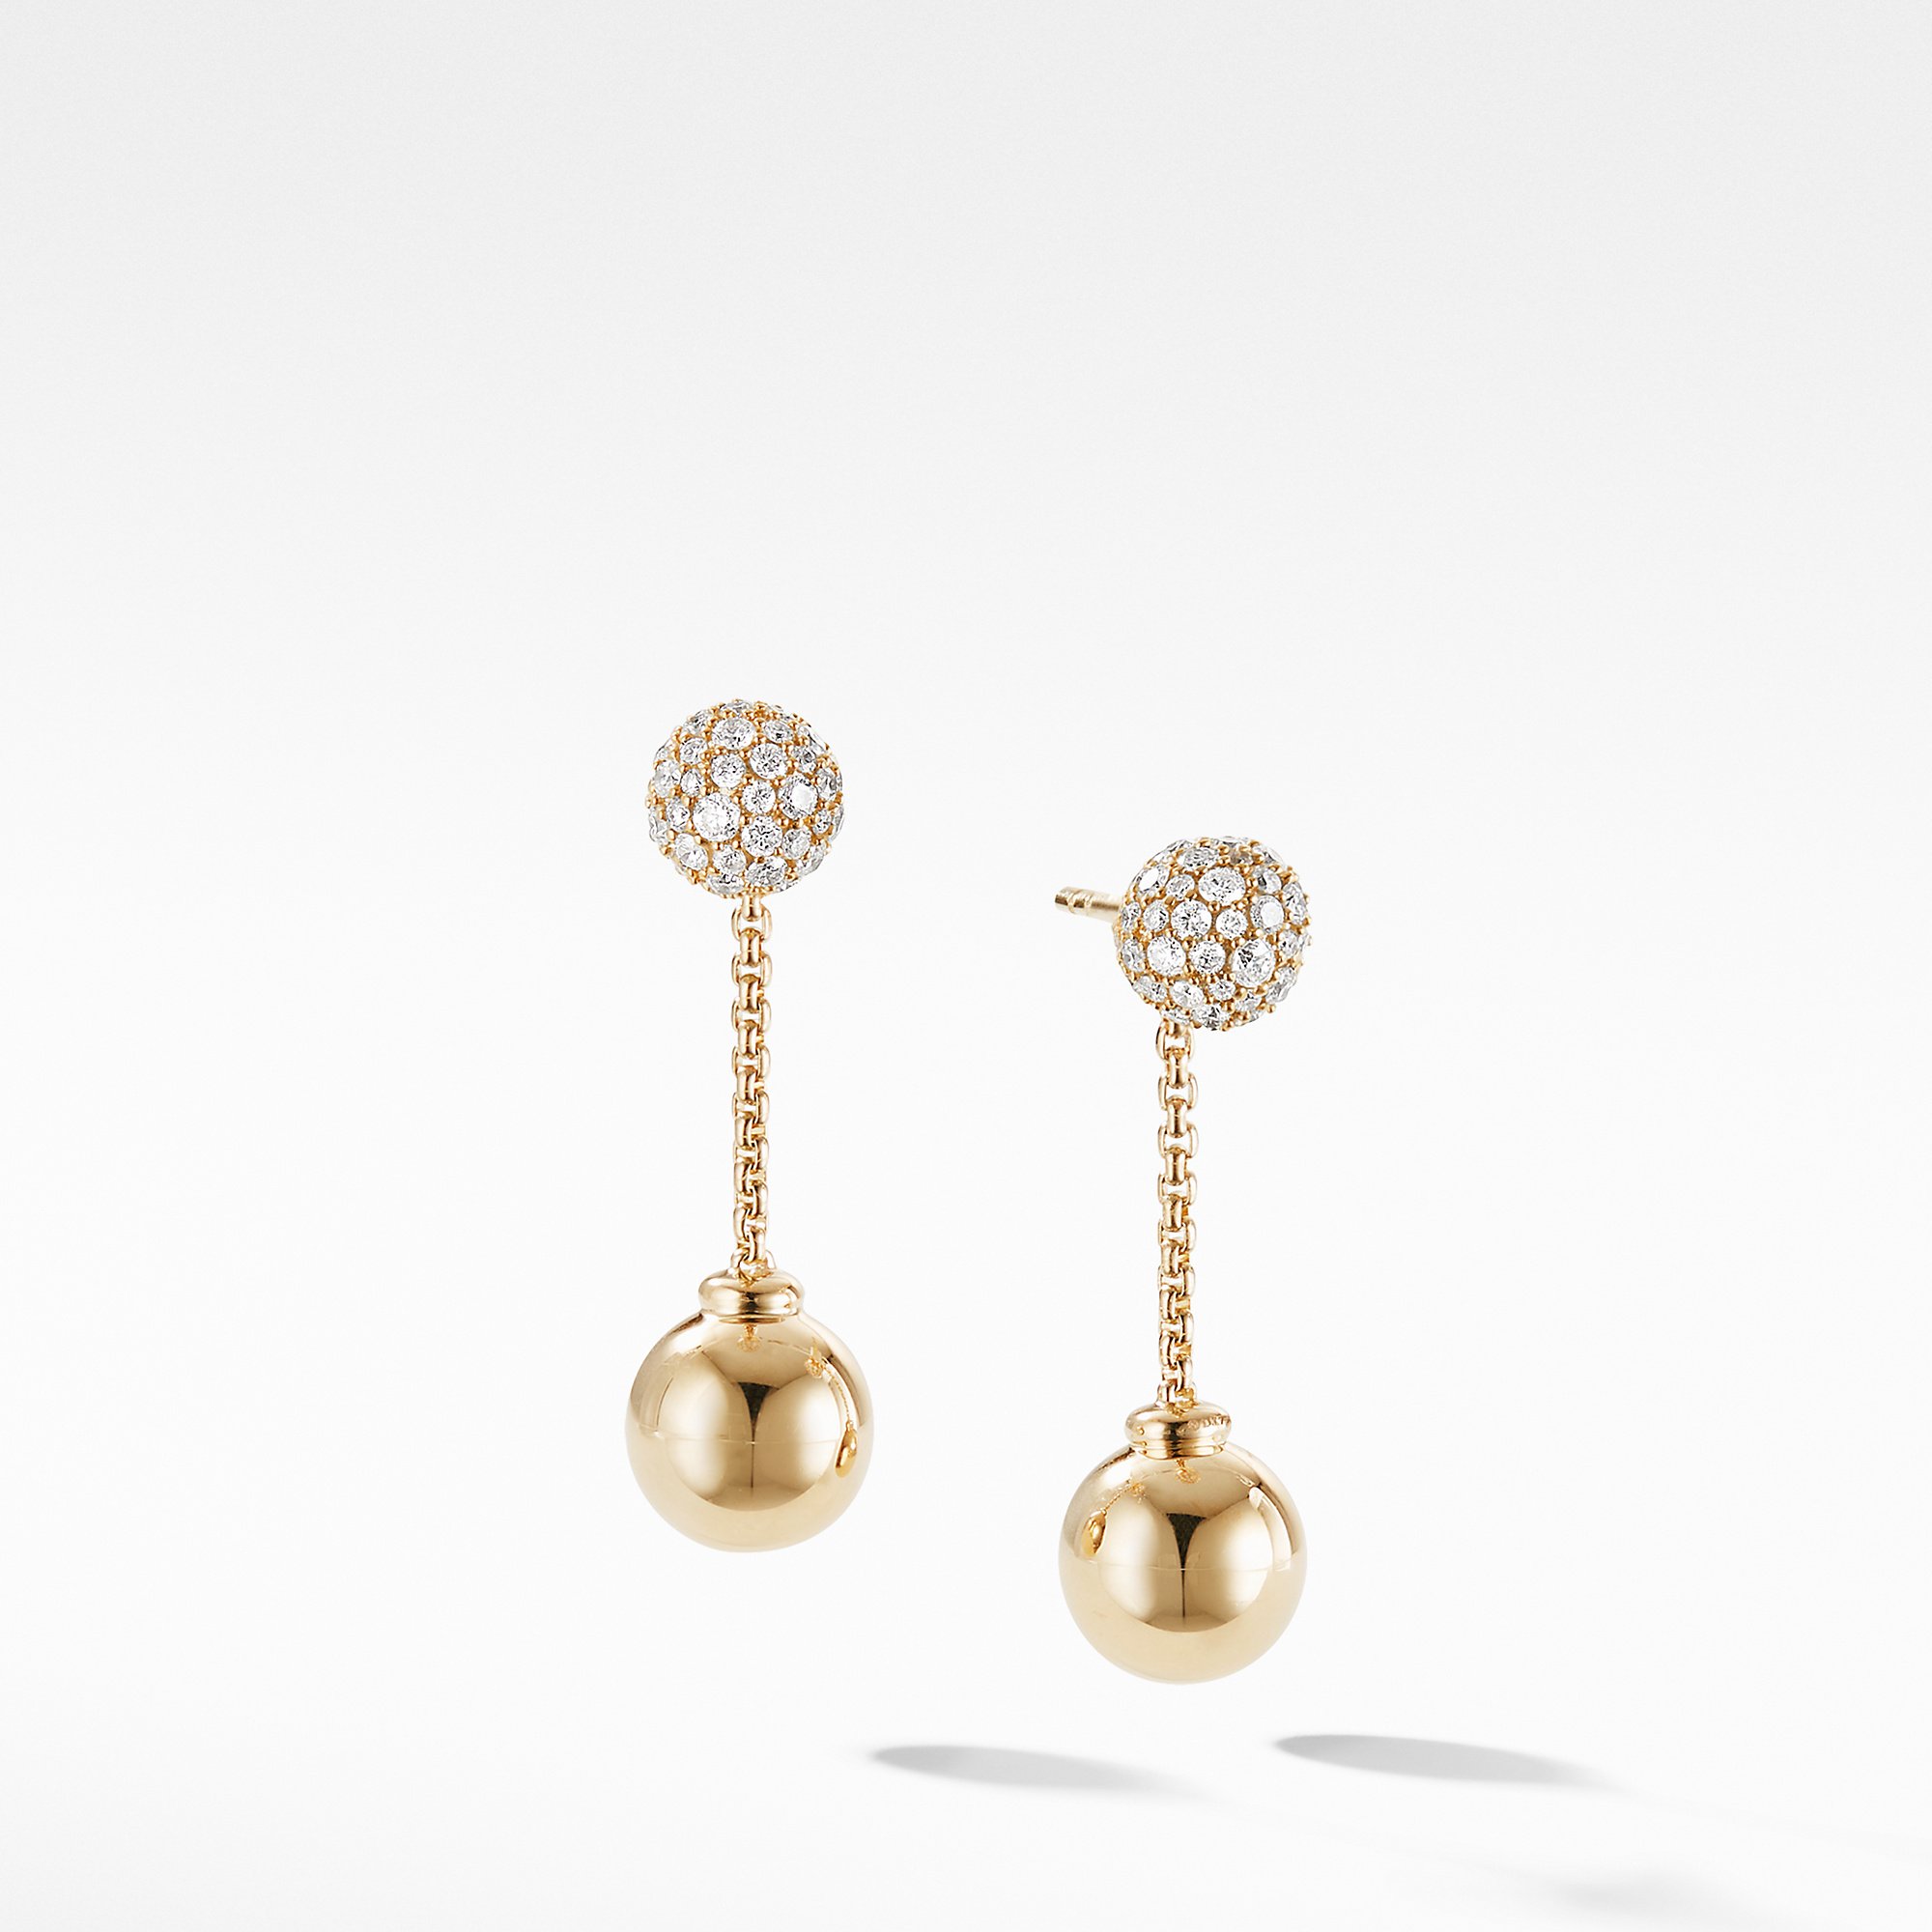 David Yurman Solari Chain Drop Earring in 18K Yellow Gold with Diamonds 0